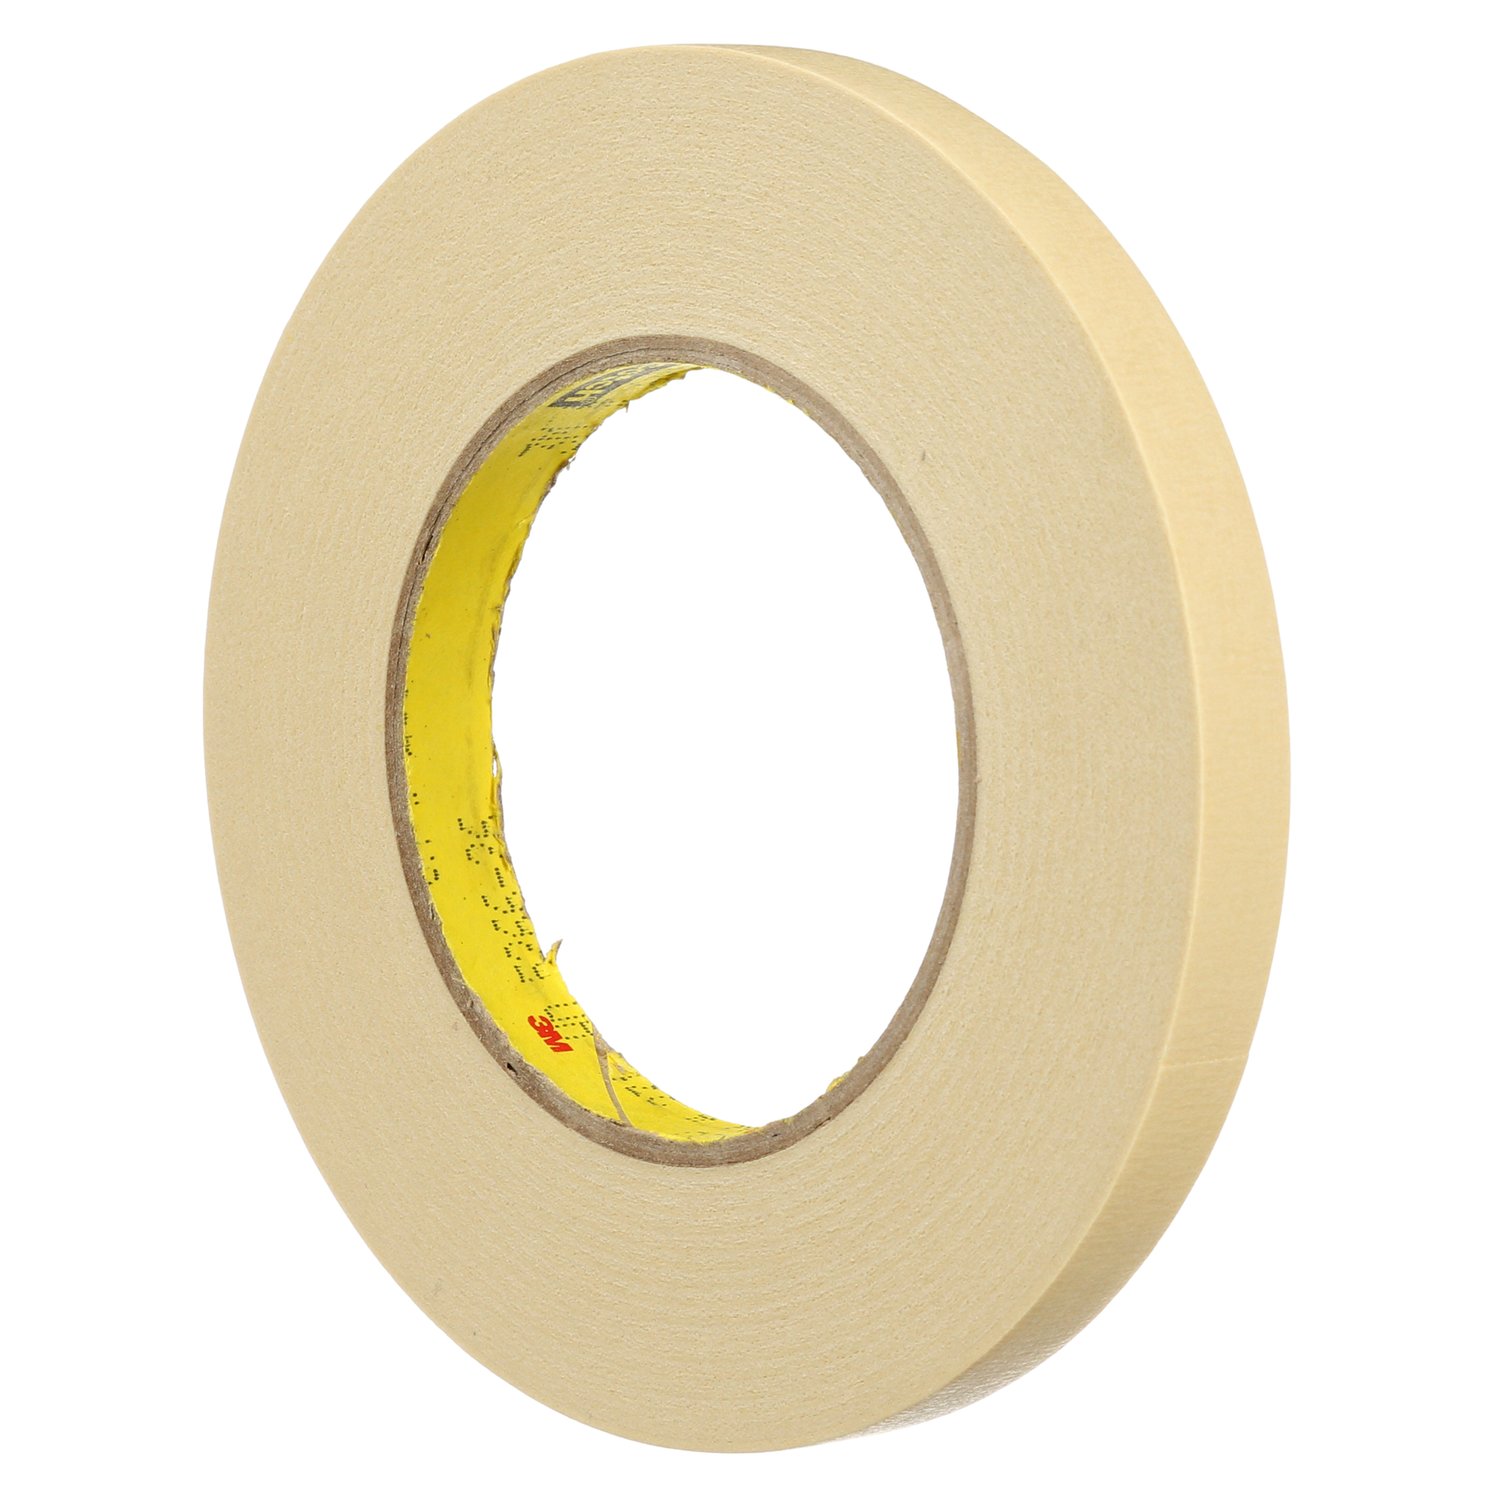 Brilliant Gold - 1-pound of Micro Metal Flake .004 100 Micron